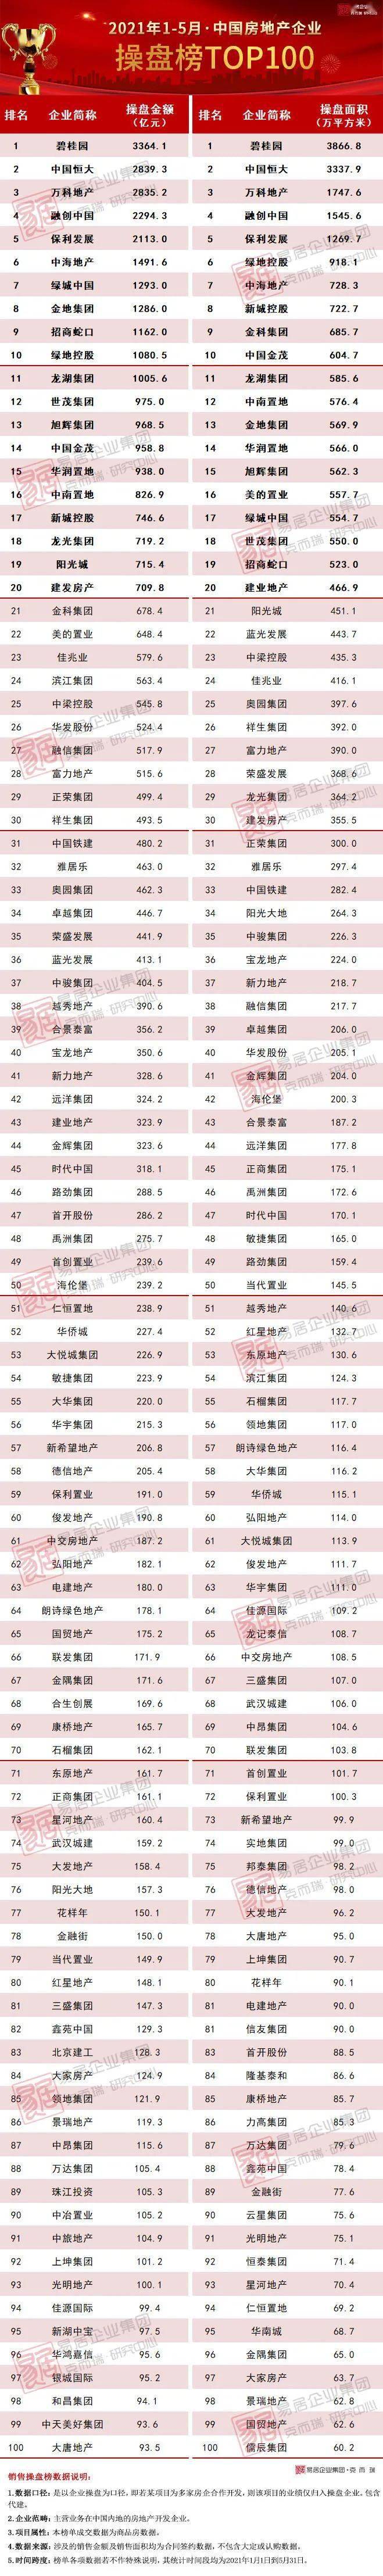 中国地产排行榜_2021年1-5月中国房地产企业新增货值TOP100排行榜